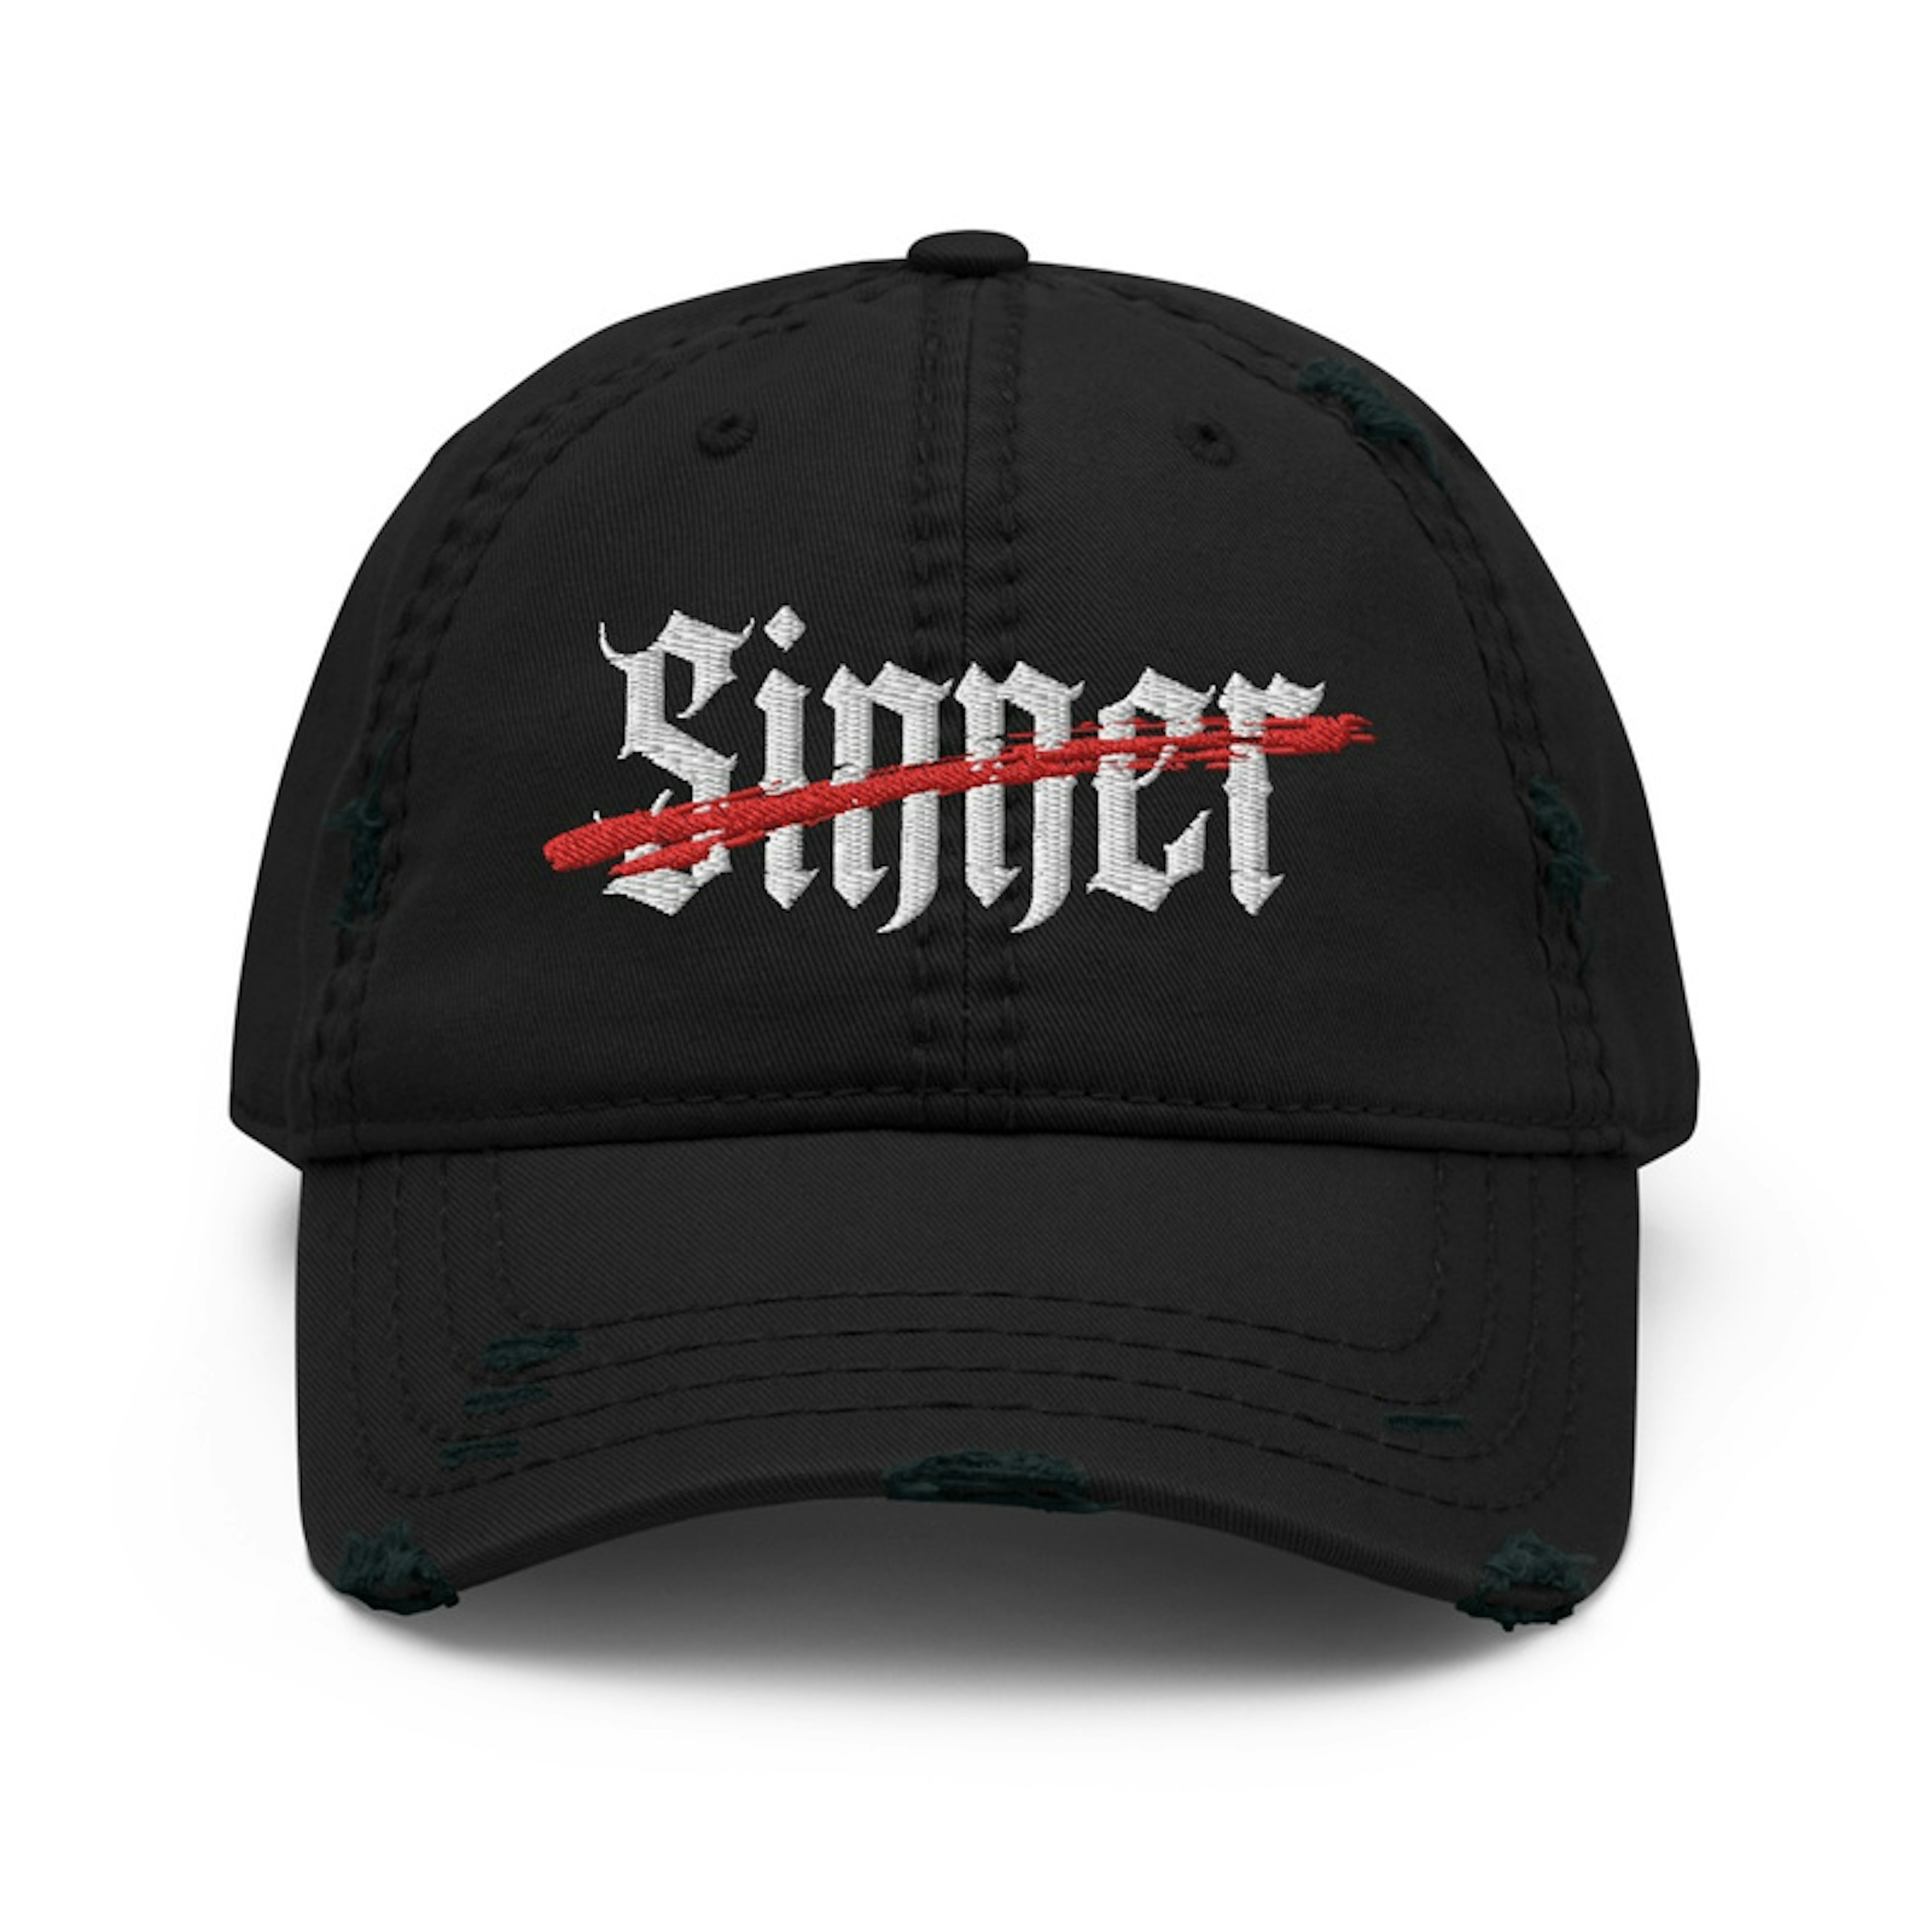 Not A Sinner - Hat